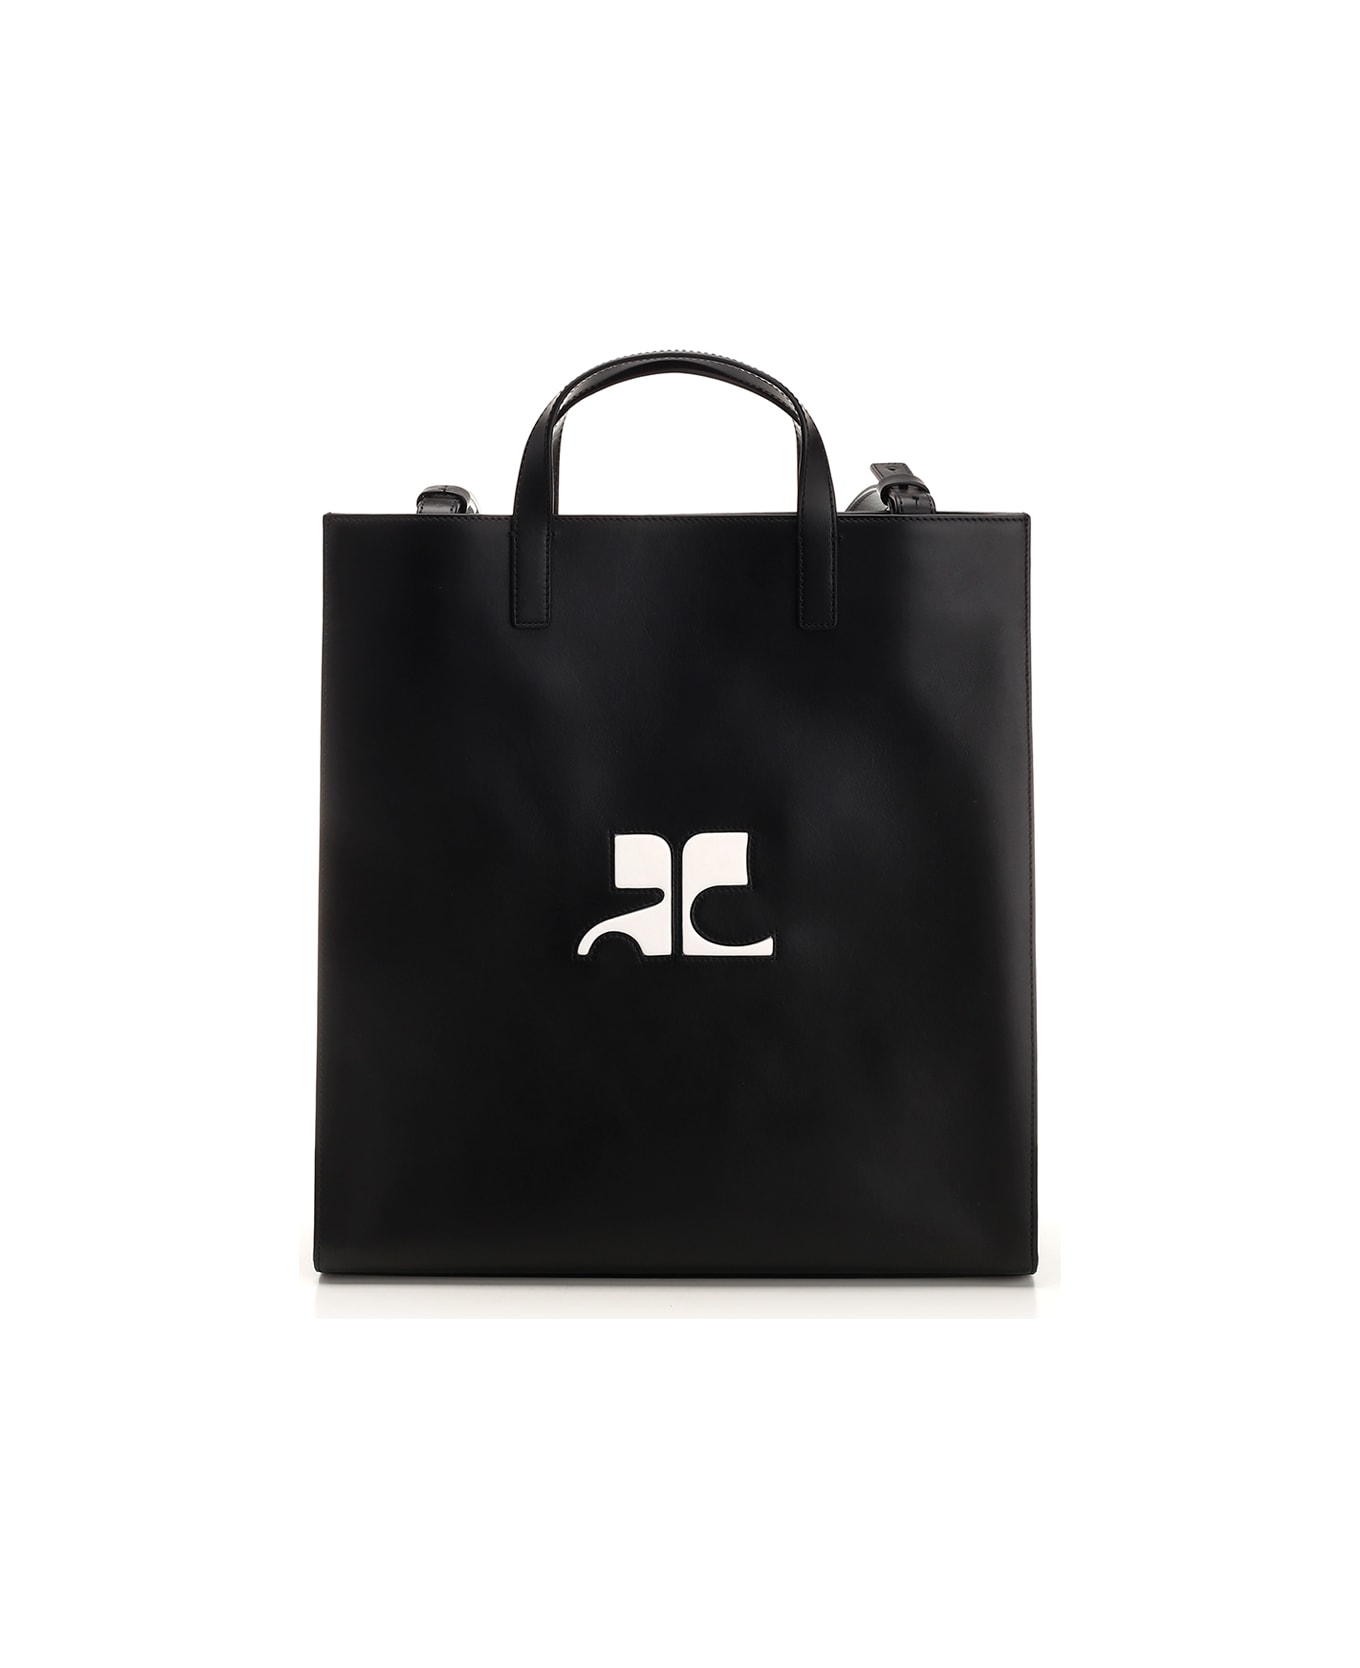 Courrèges 'heritage Tote' Bag In Black Calfskin - BLACK トートバッグ